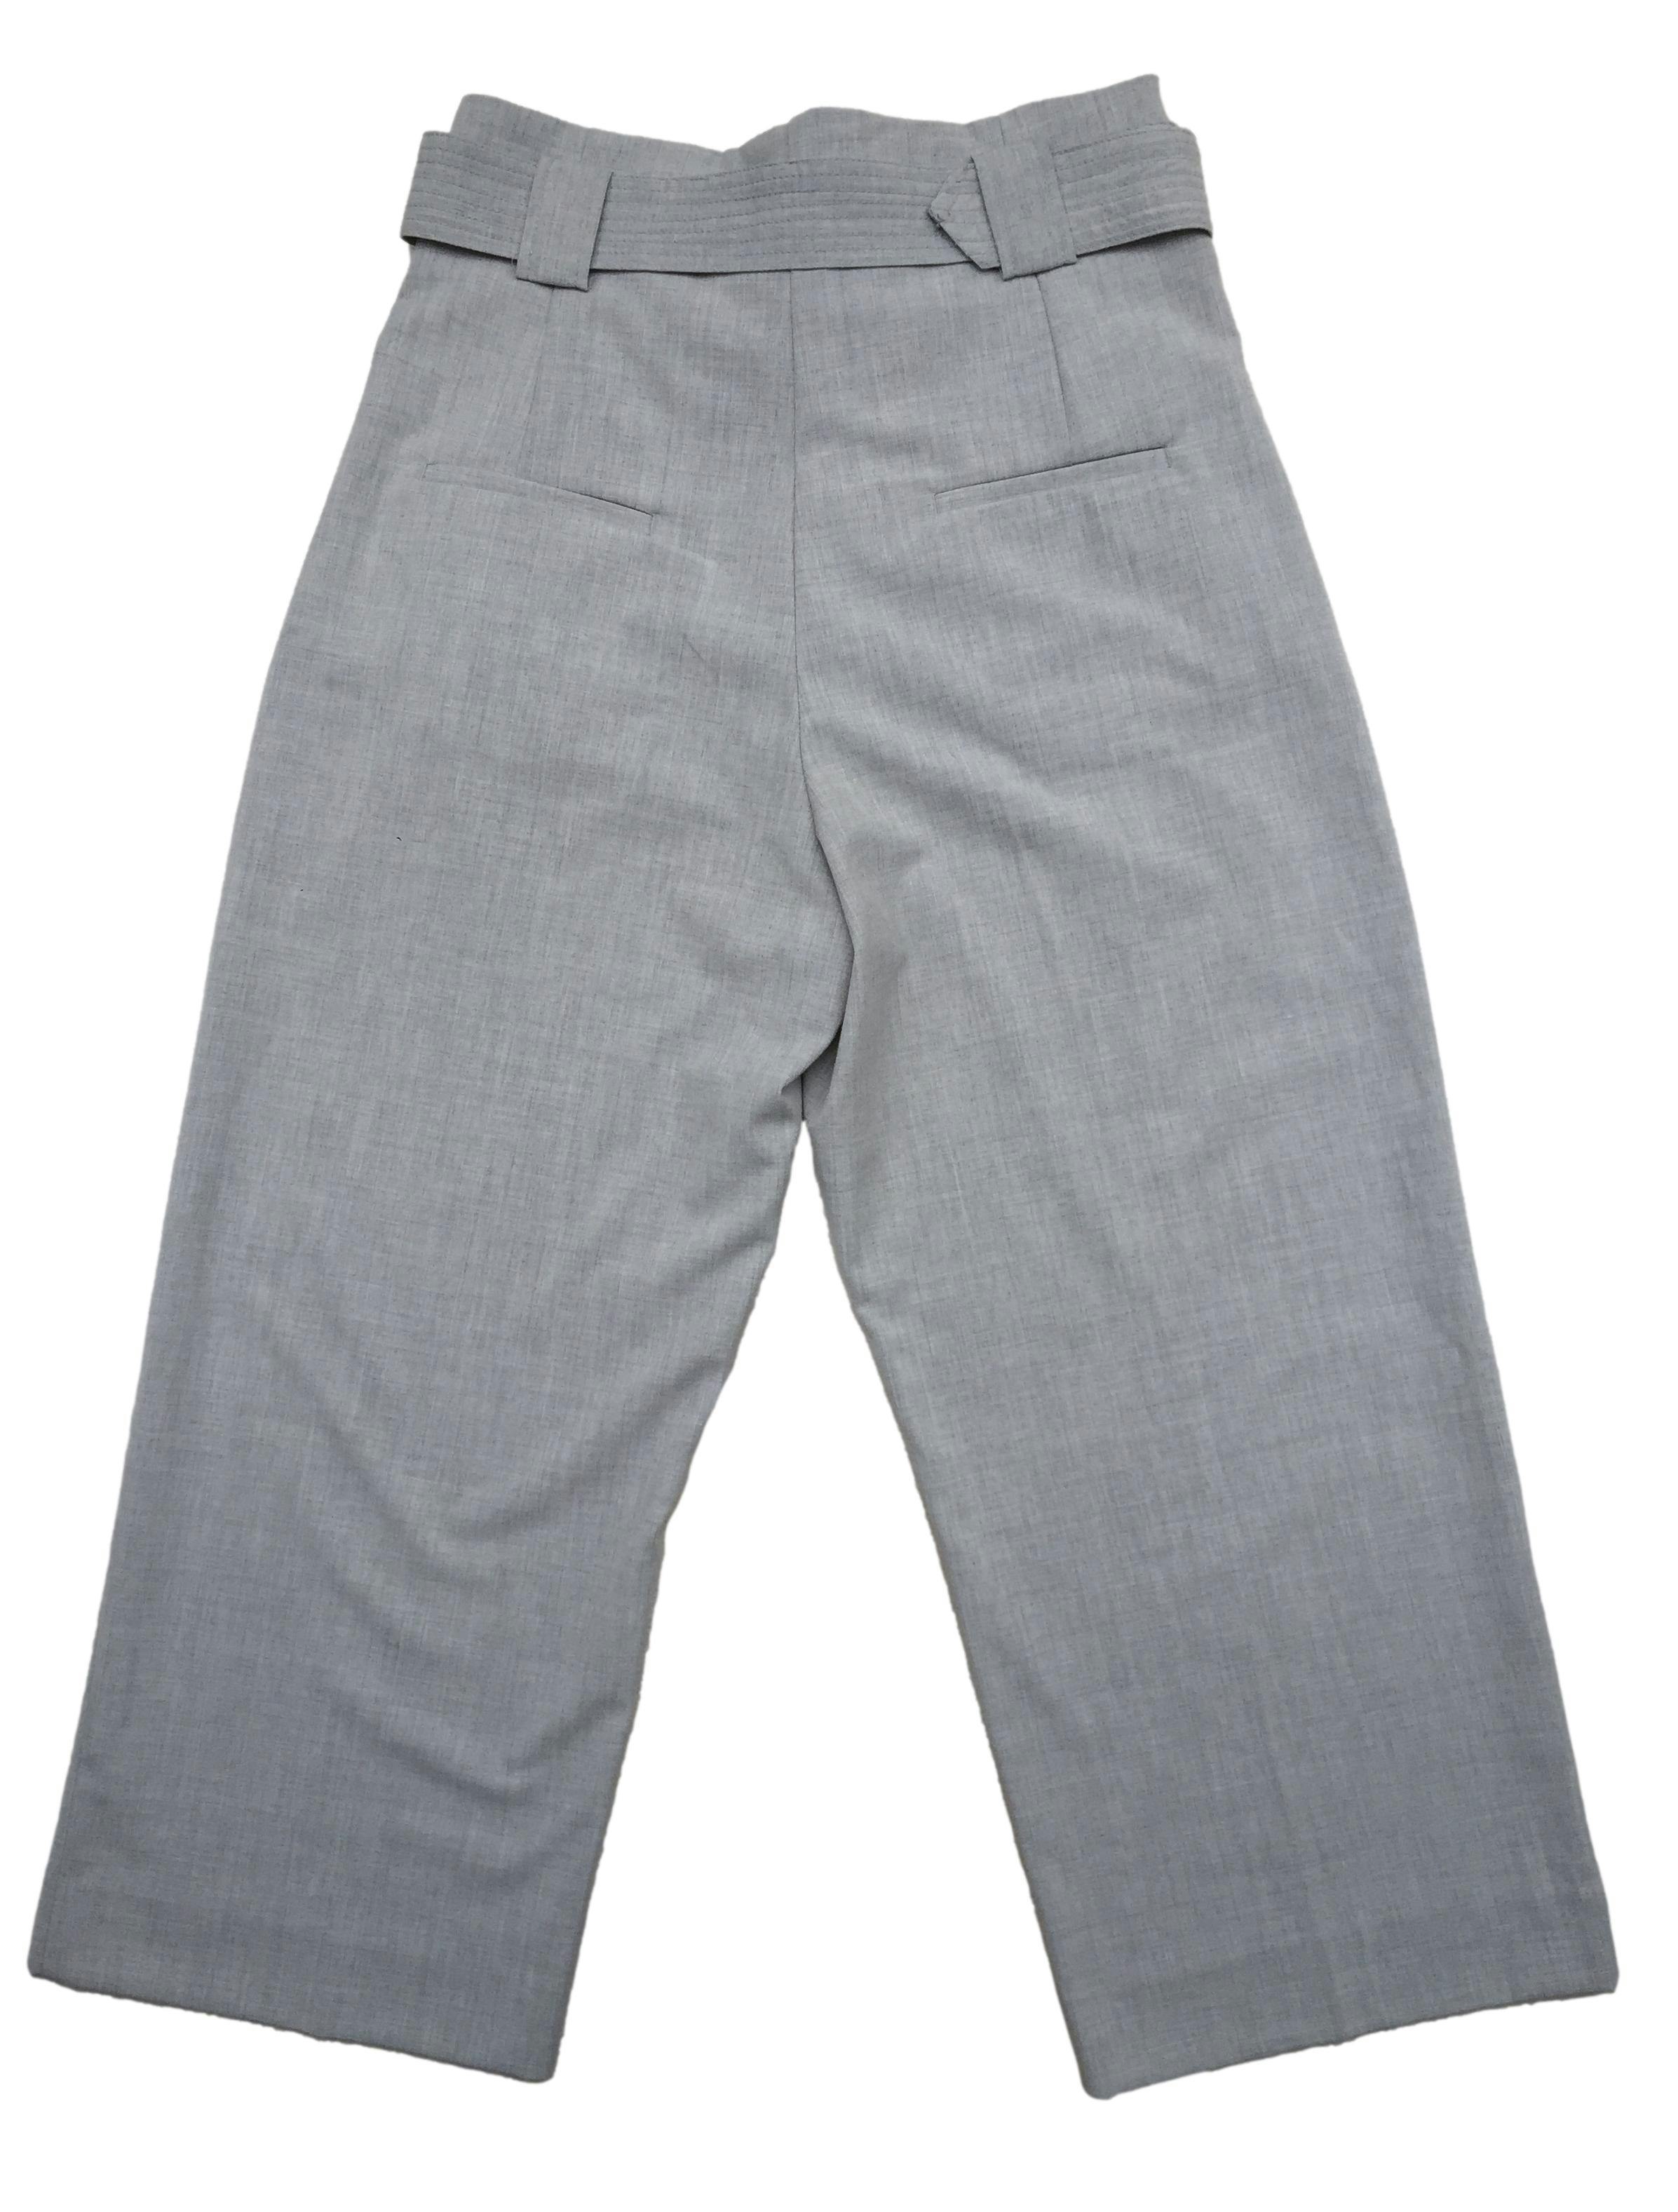 Pantalón Mango gris tipo sastre, correa incluída, cierre y botón delantero. Cintura: 76cm, Tiro: 36cm, Largo: 94cm.